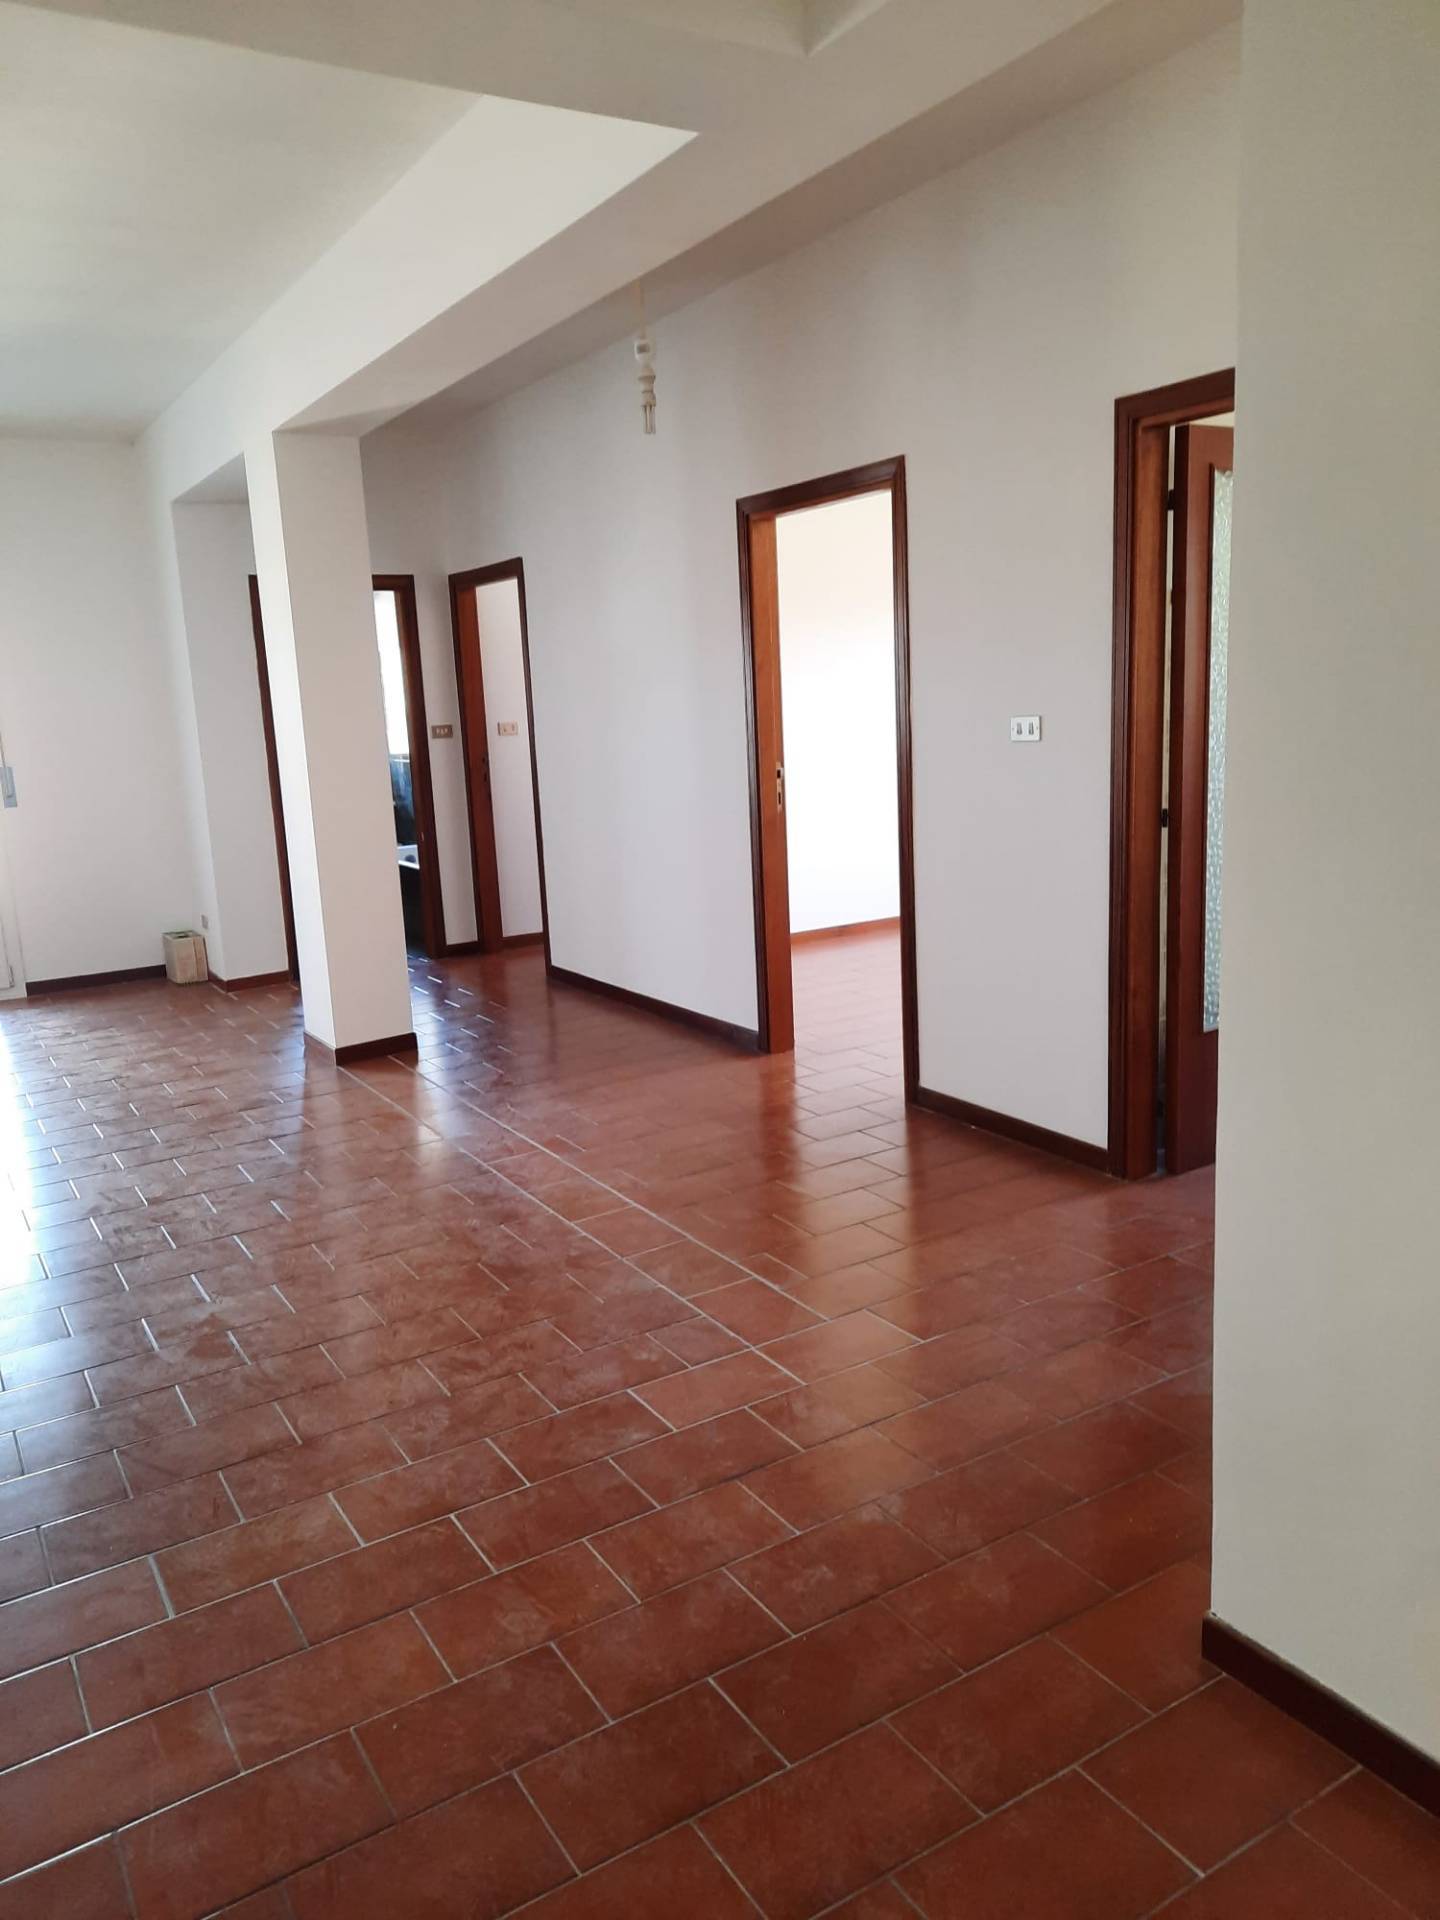 Appartamento in vendita a Venarotta, 4 locali, prezzo € 85.000 | PortaleAgenzieImmobiliari.it